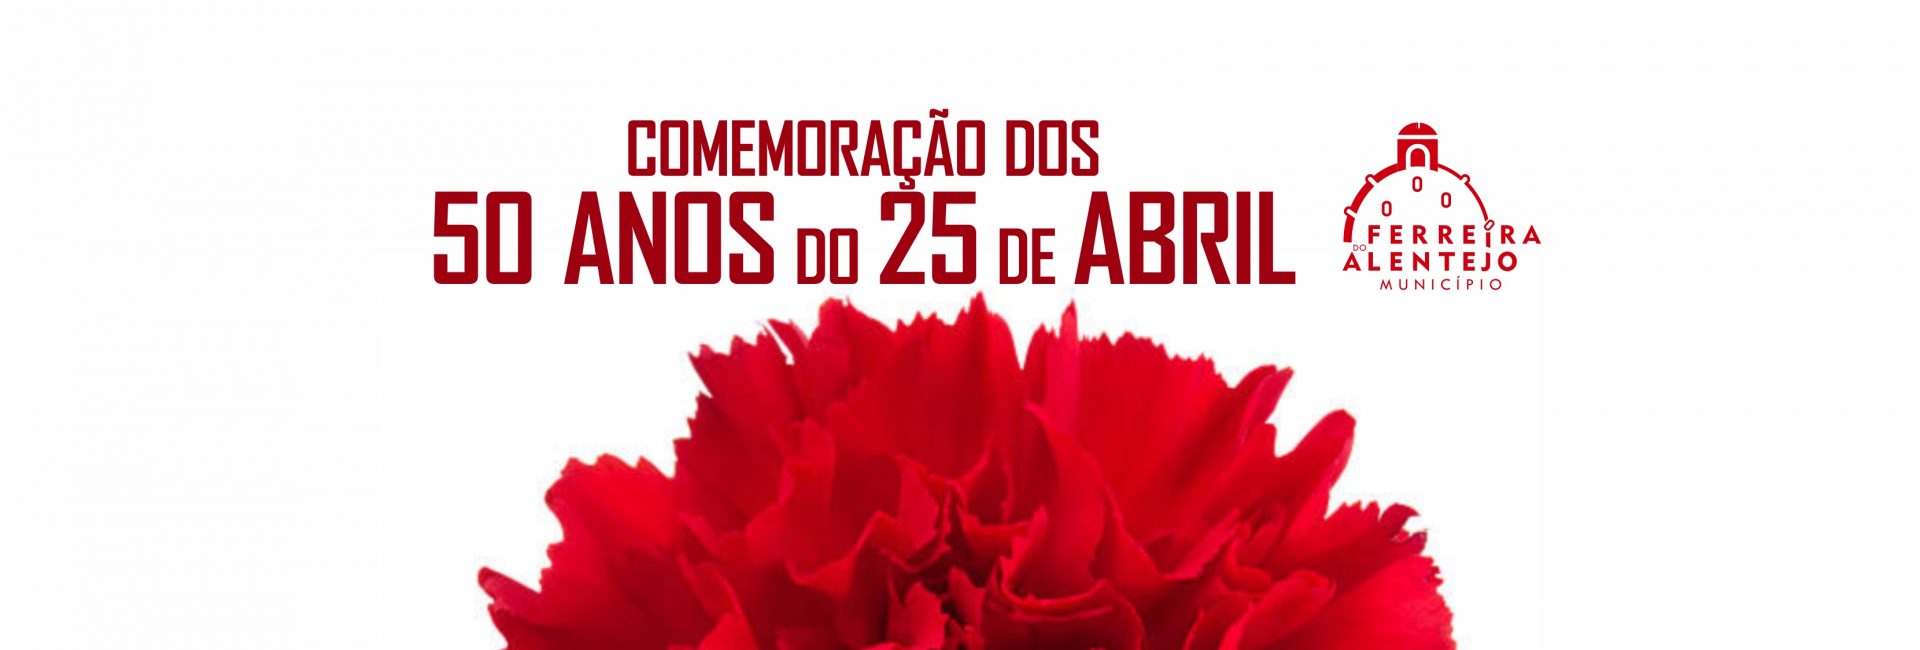 Comemoração dos 50 anos do 25 de Abril